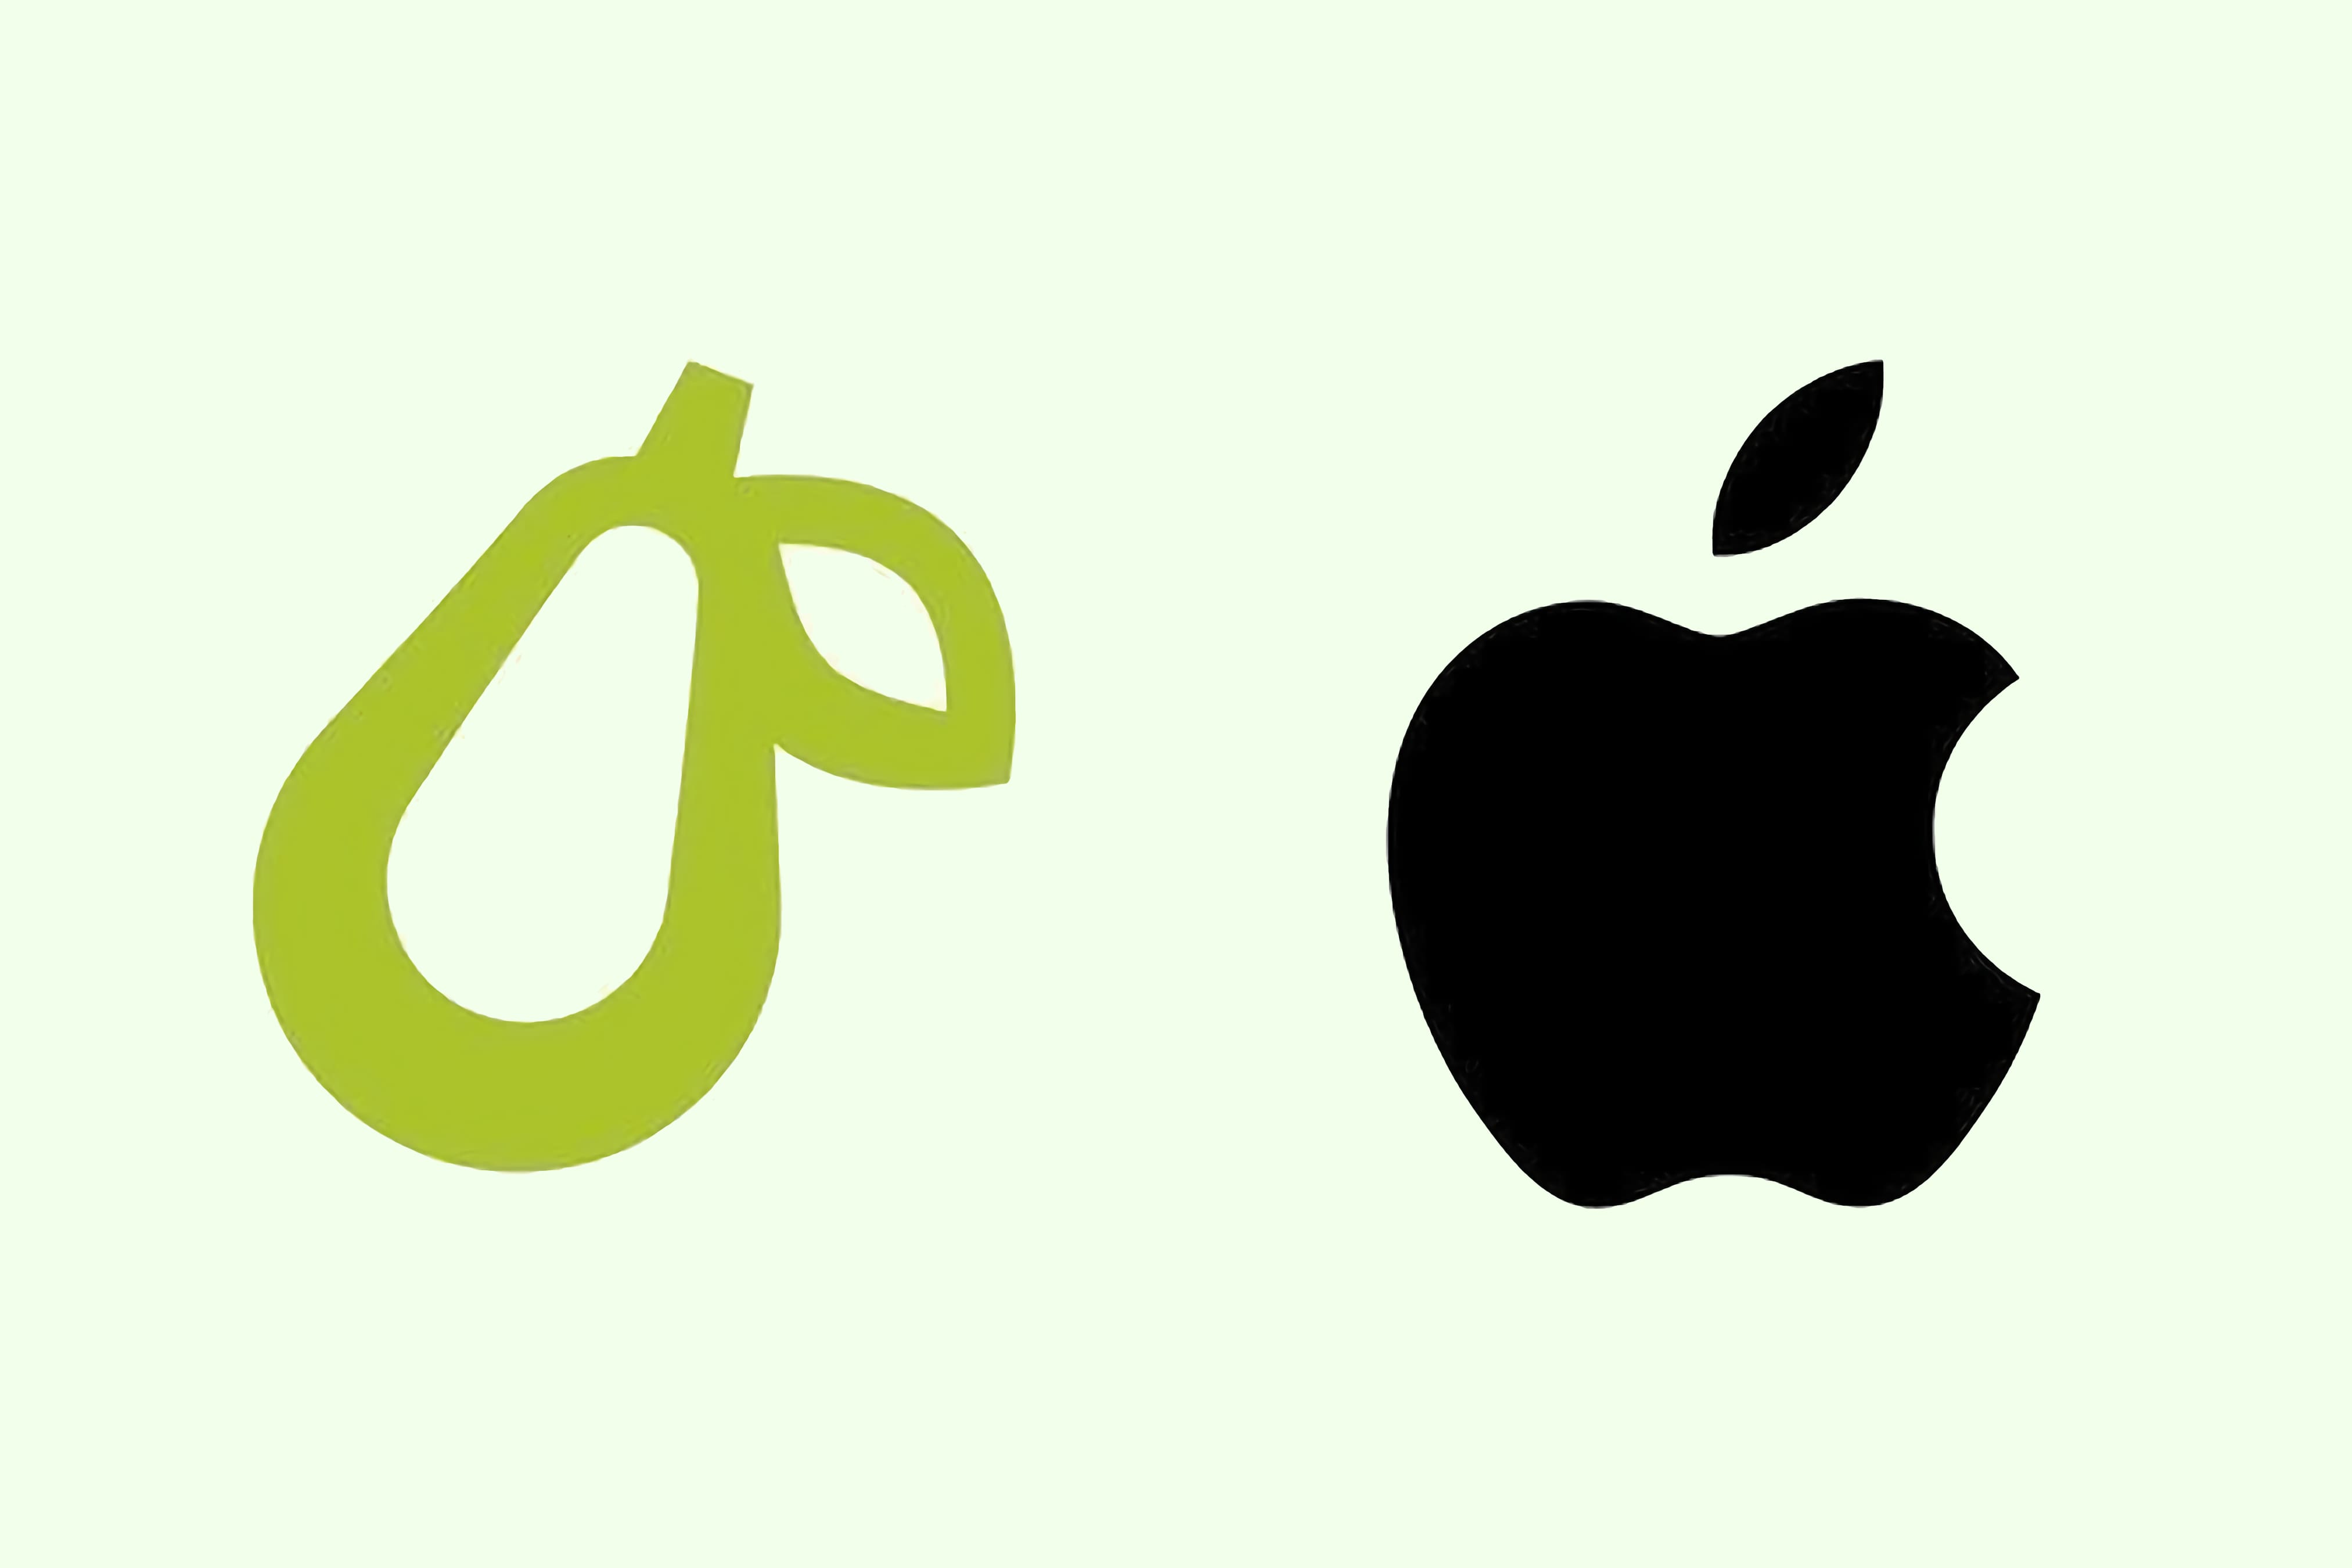 Apple и Prepear договорились об использовании логотипа груши, похожей на яблоко